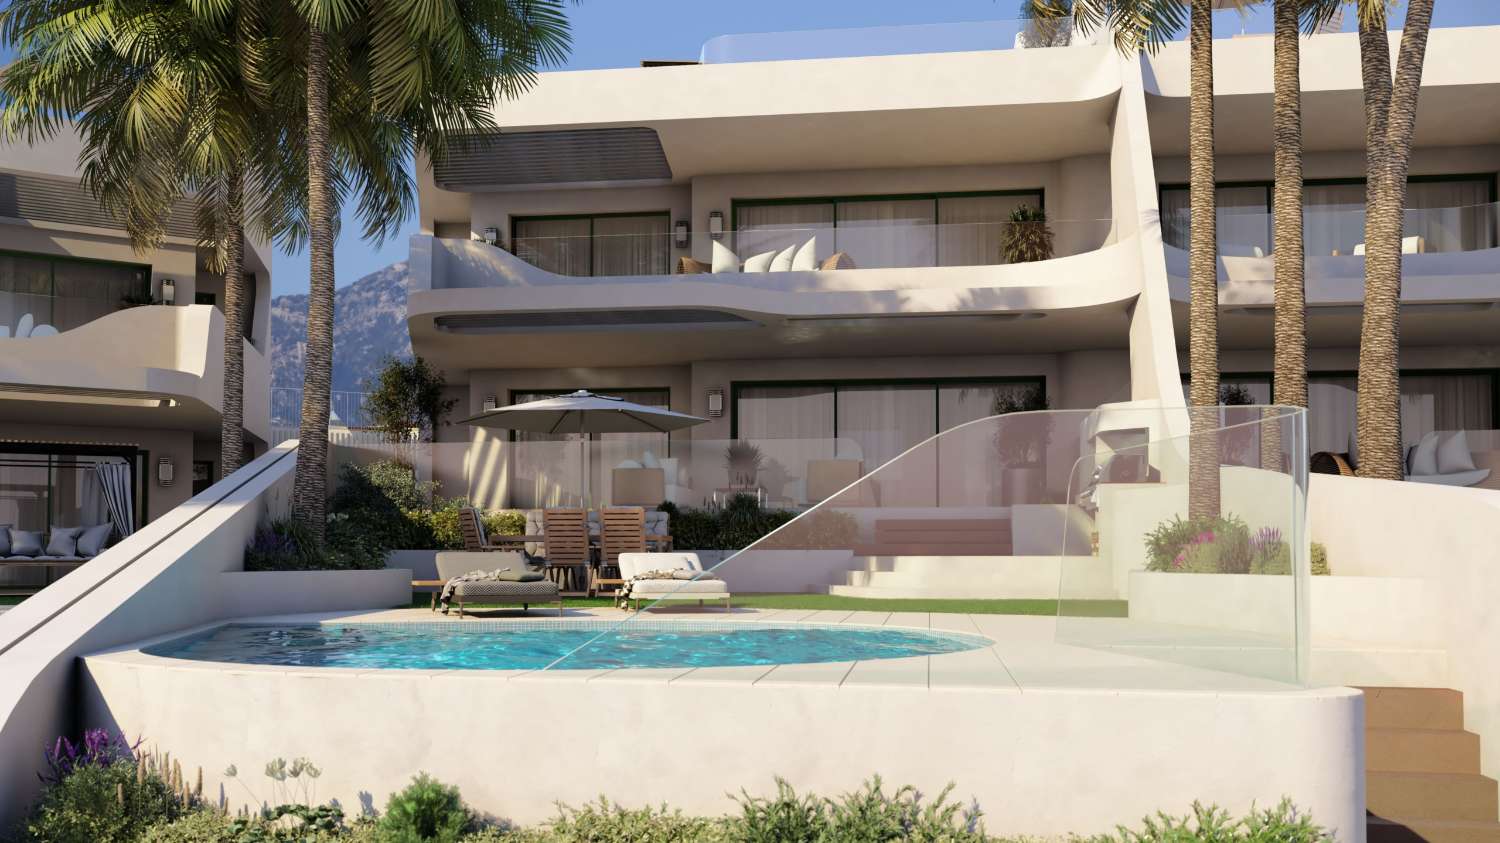 Habitatges d'obra nova a Marbella, Cabopino. Només 8 unitats. Totes disposen de piscina privada.